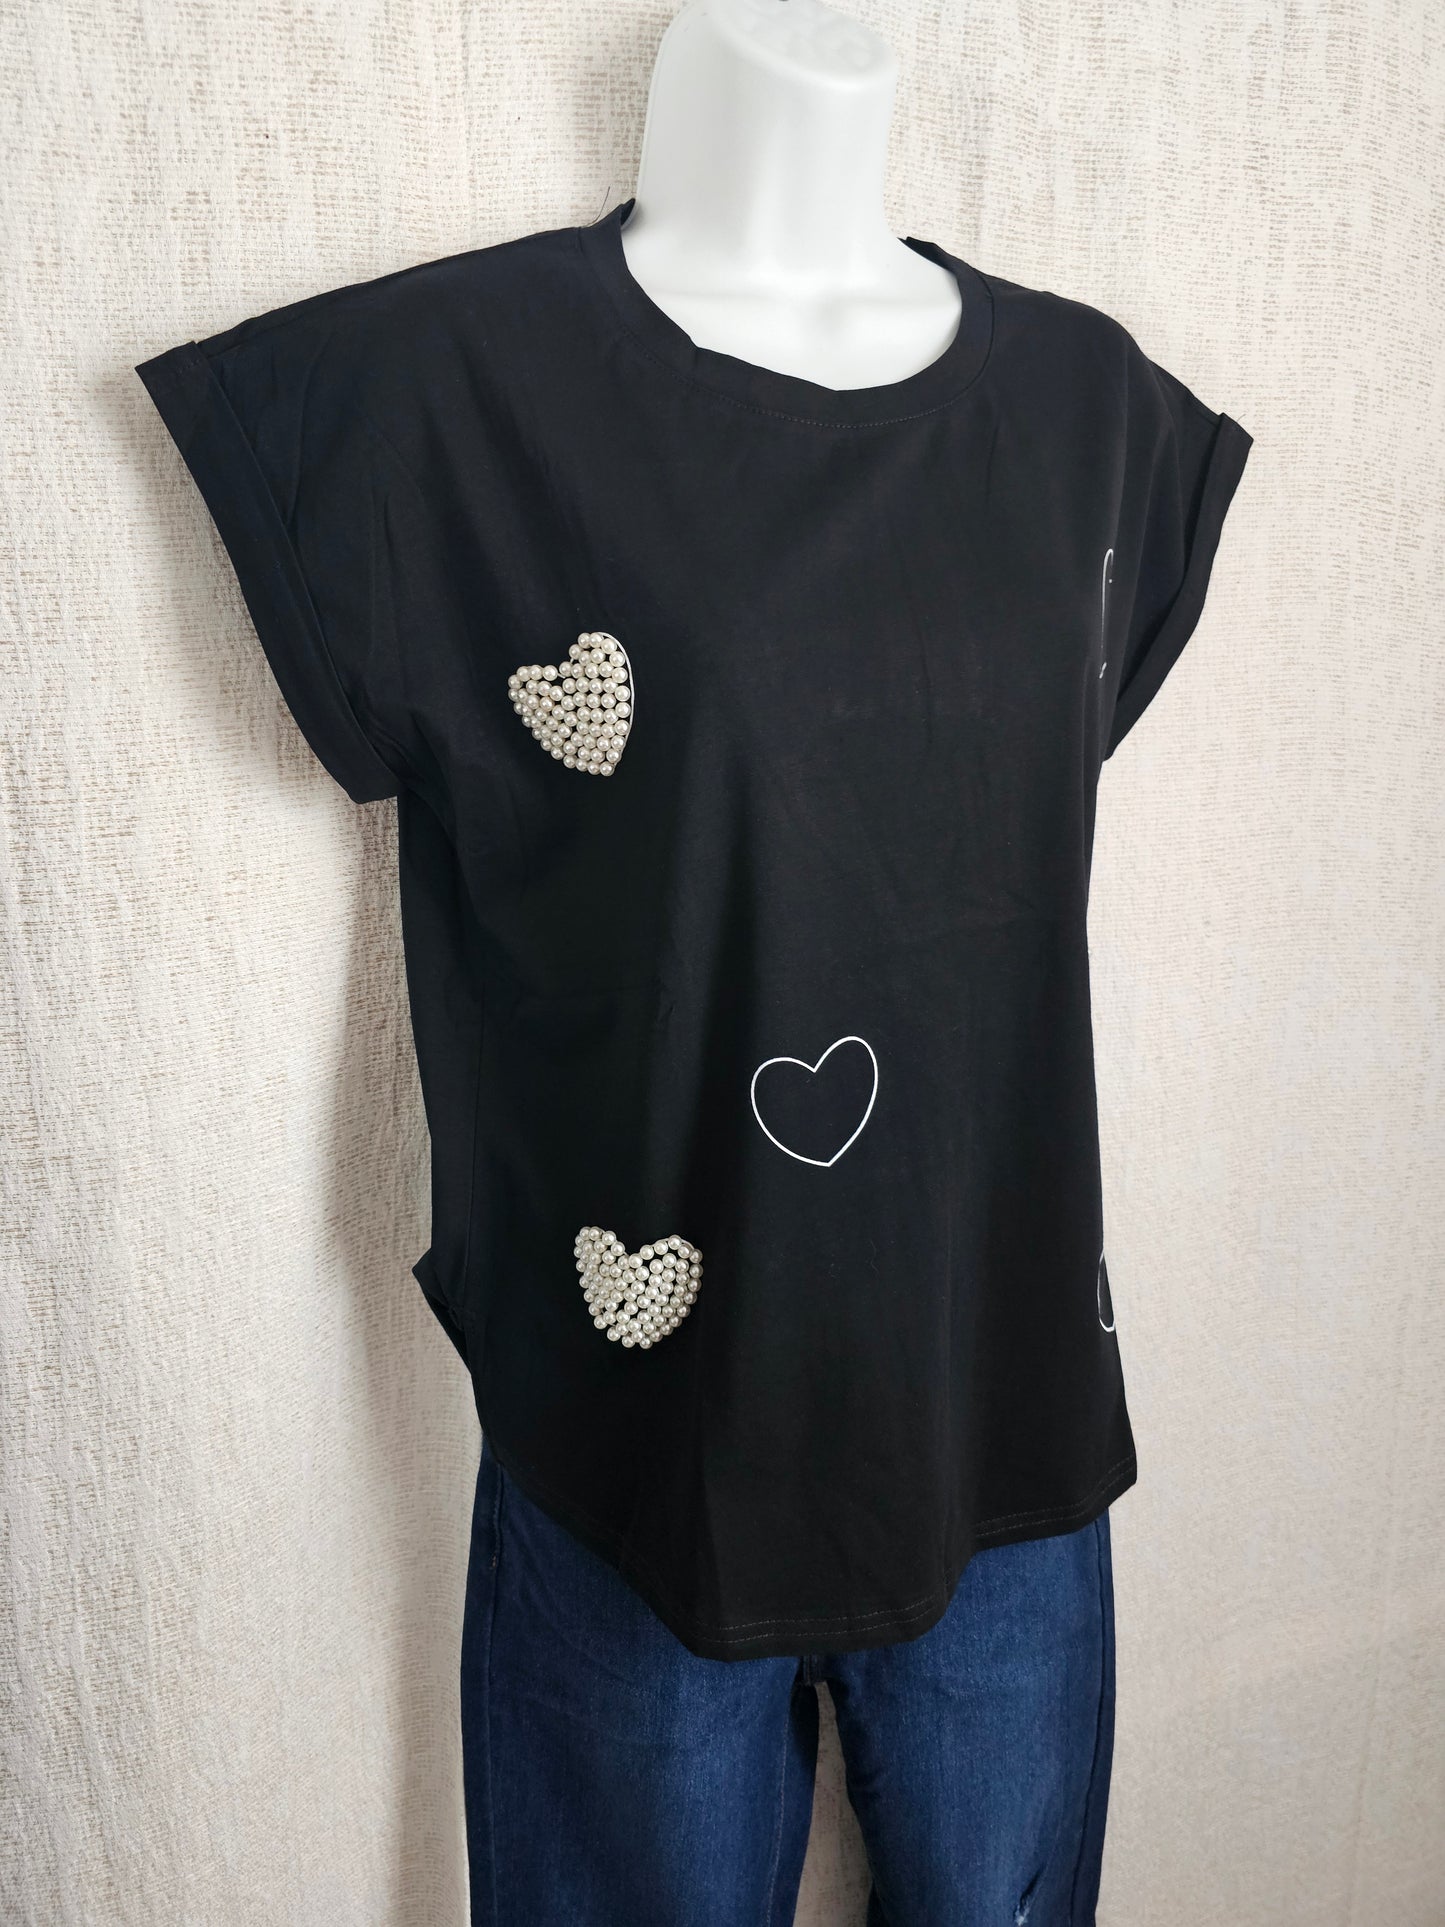 Pearl Hearts T-shirt Black / Blusa de corazones con perlas